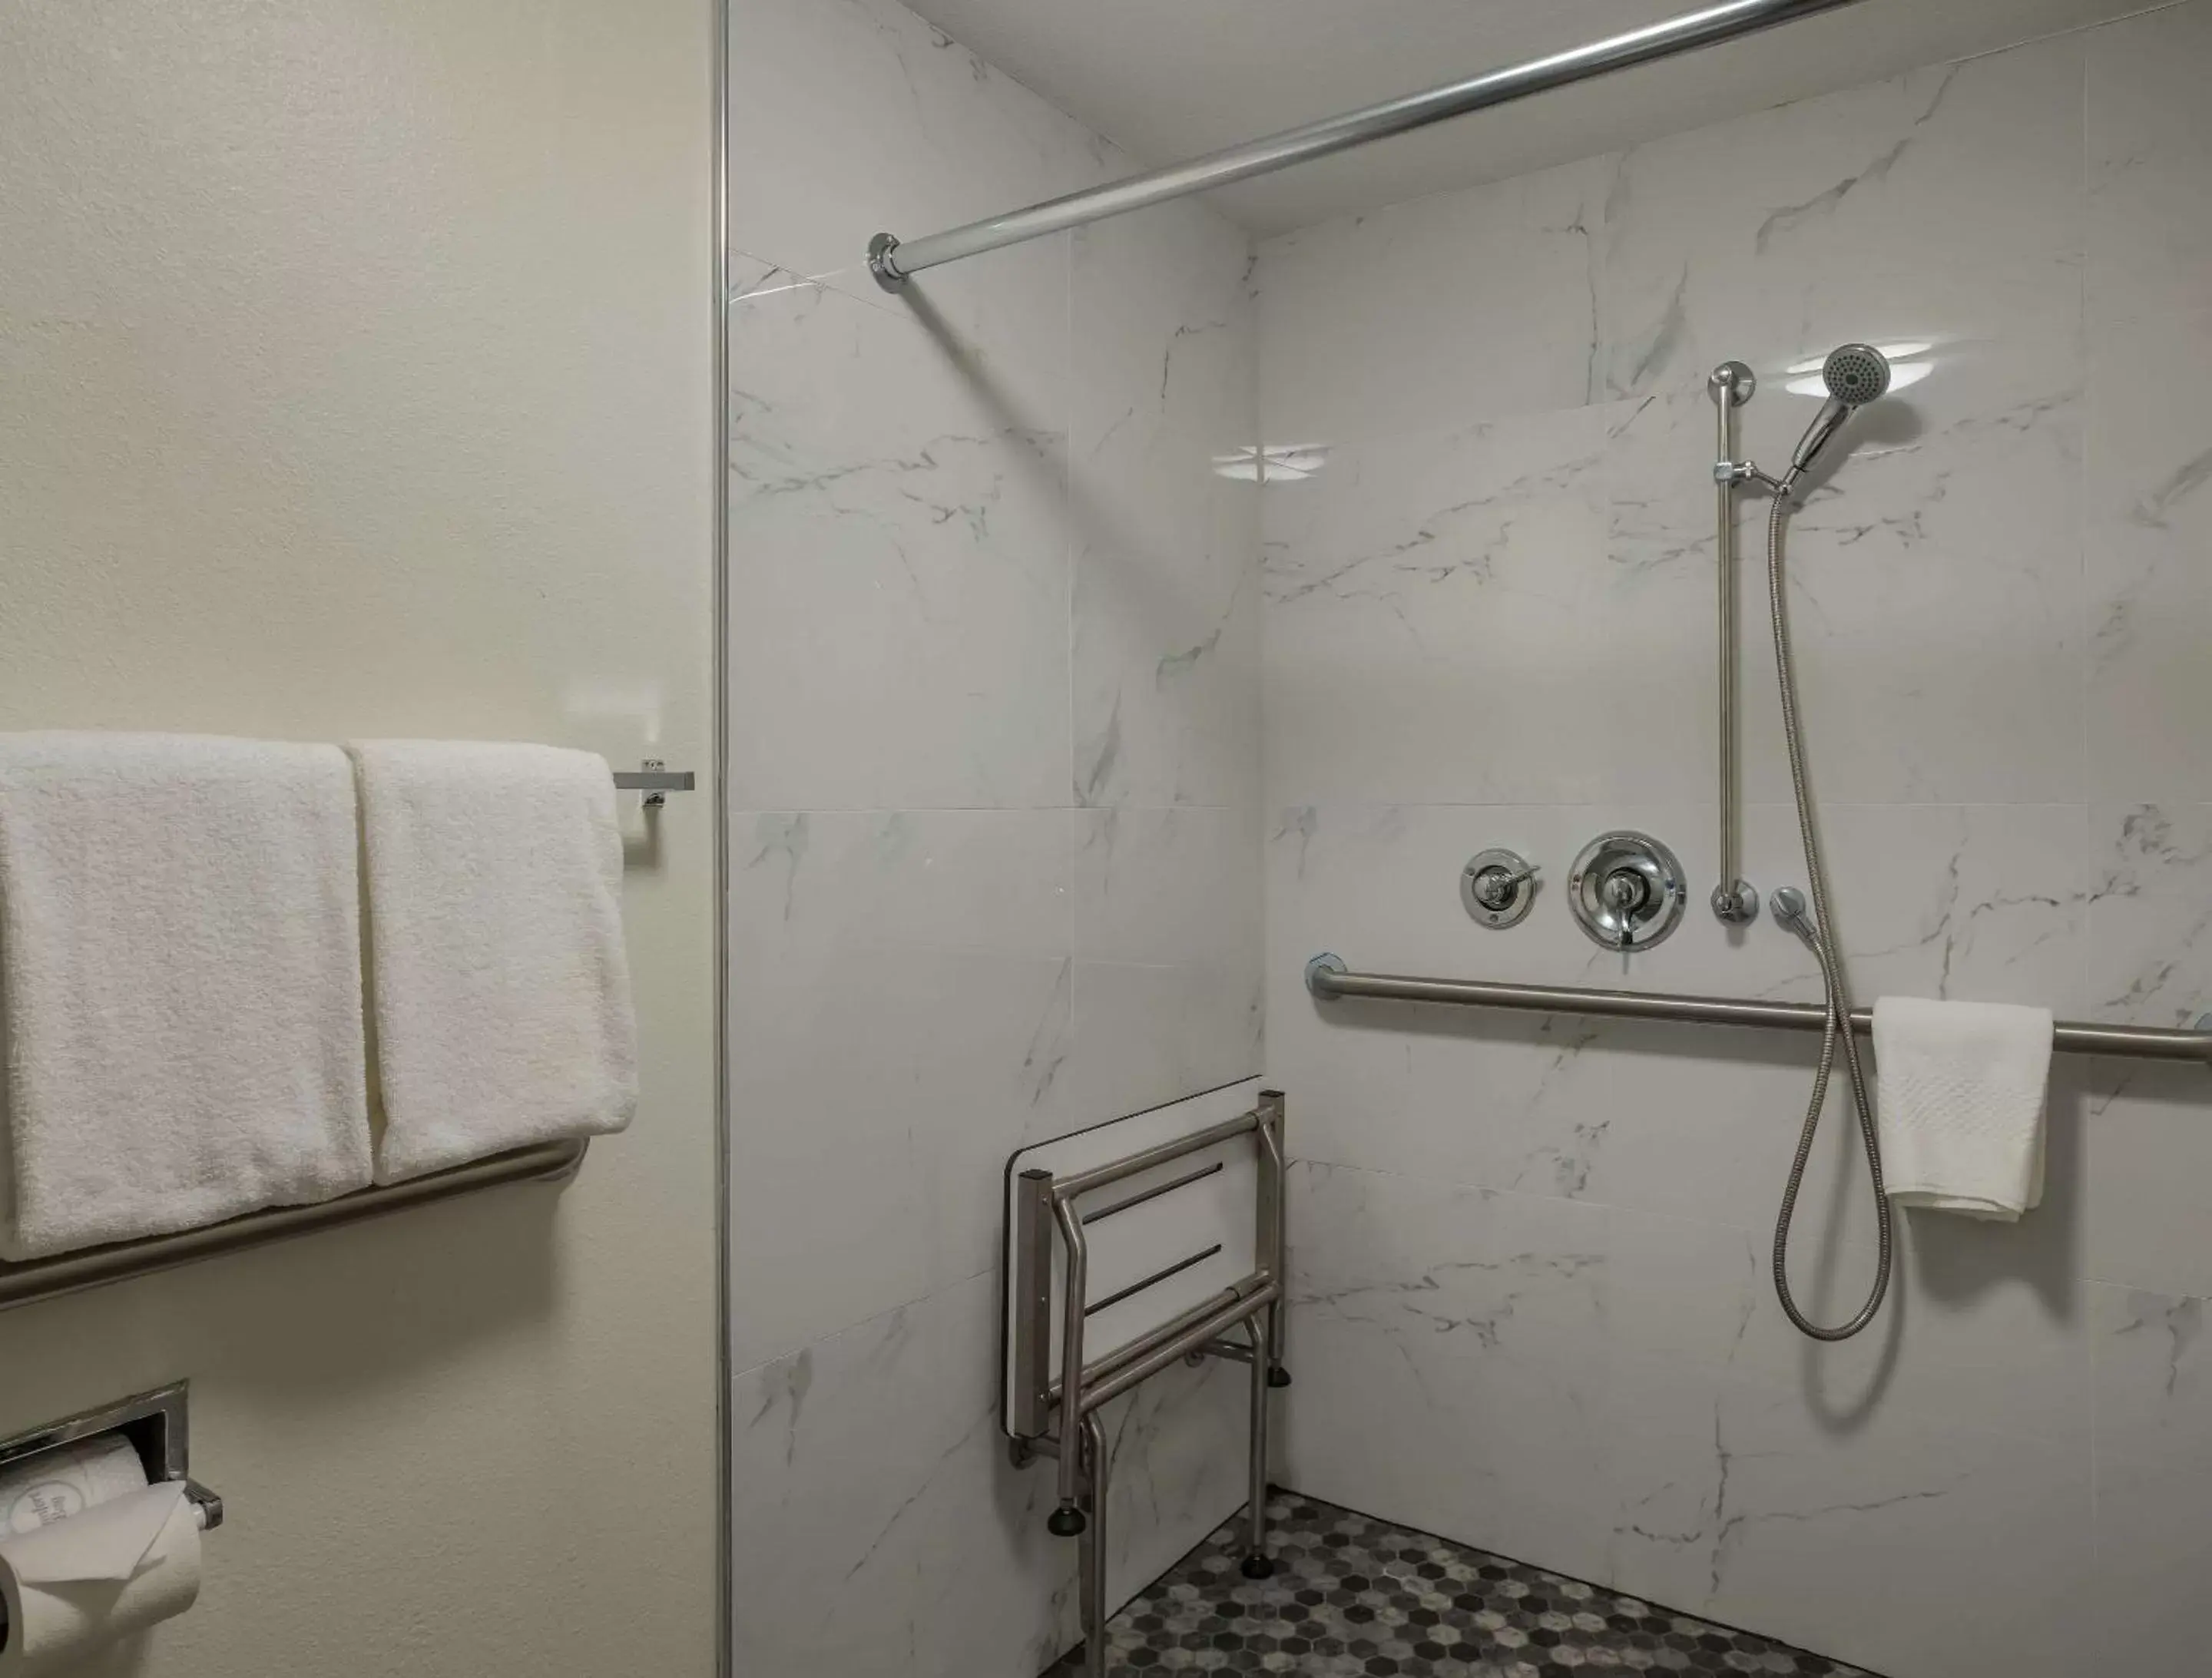 Bedroom, Bathroom in MainStay Suites Savannah Midtown